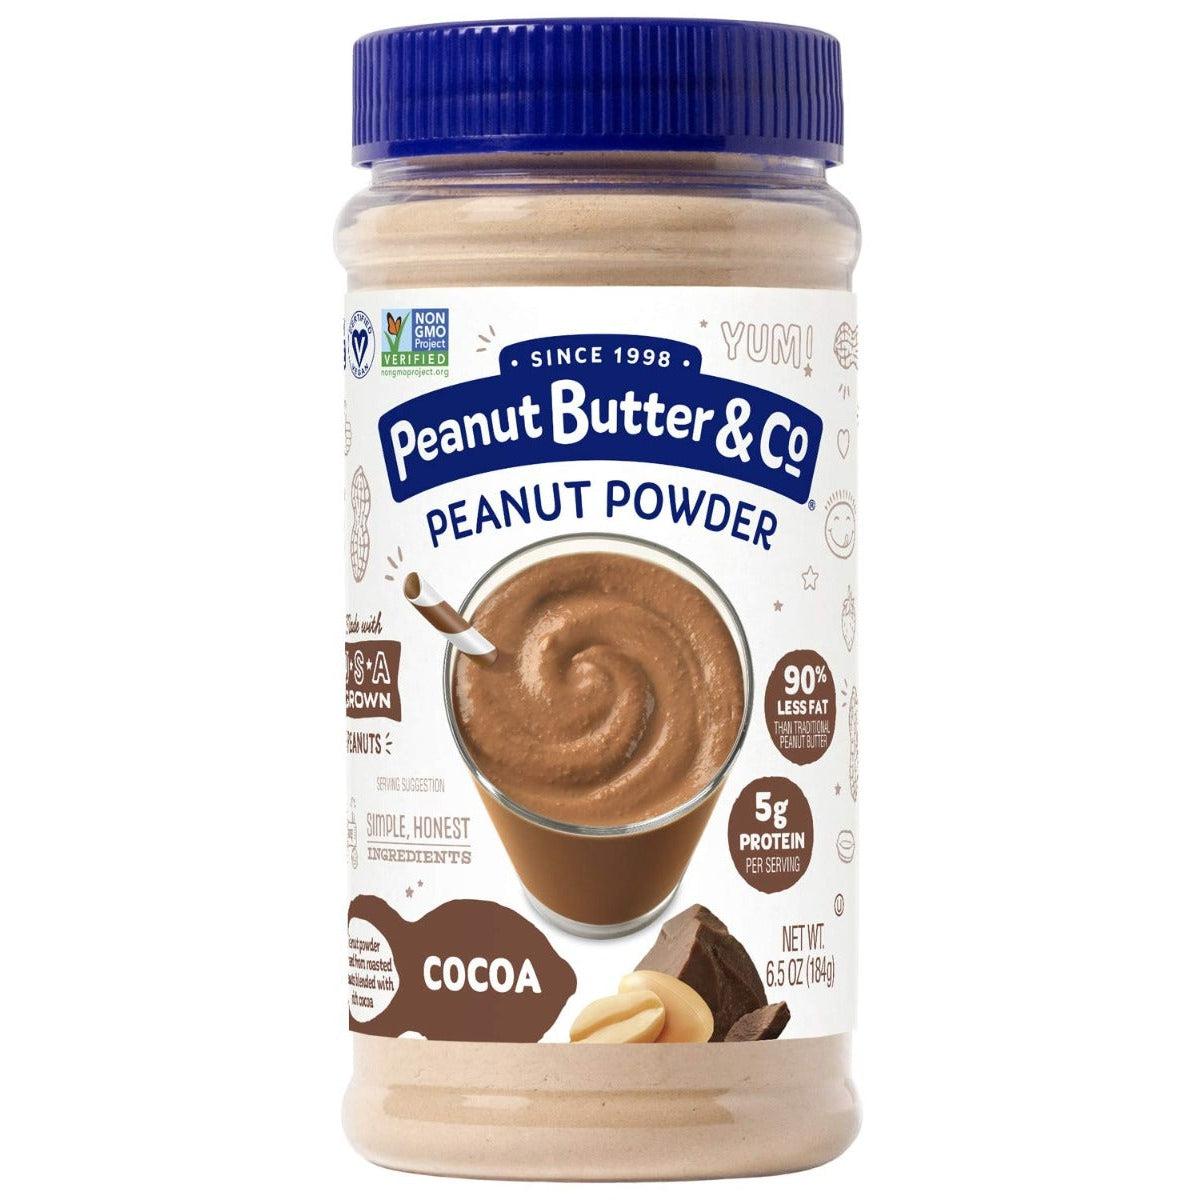 Peanut Butter & Co. Peanut Powder Cocoa Non-GMO Gluten Free Vegan 184g